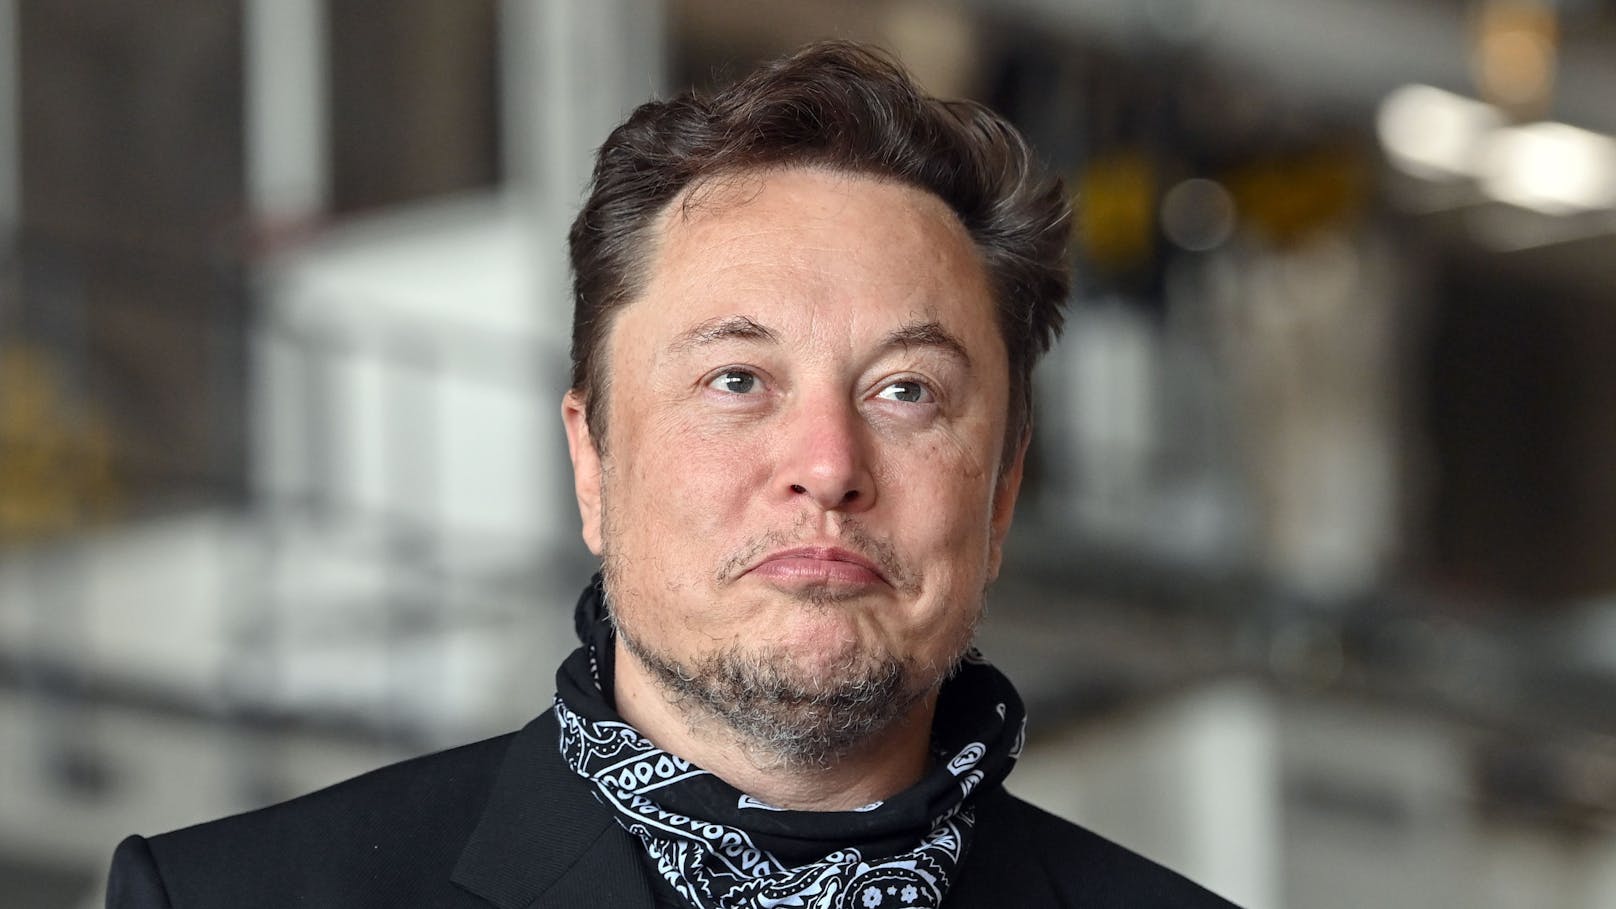 "Person der Jahres":&nbsp;Der 50-jährige <strong>Elon Musk</strong> ist Gründer des Elektroautobauers Tesla und des Raumfahrtunternehmens SpaceX und gilt derzeit als die reichste Person der Welt.